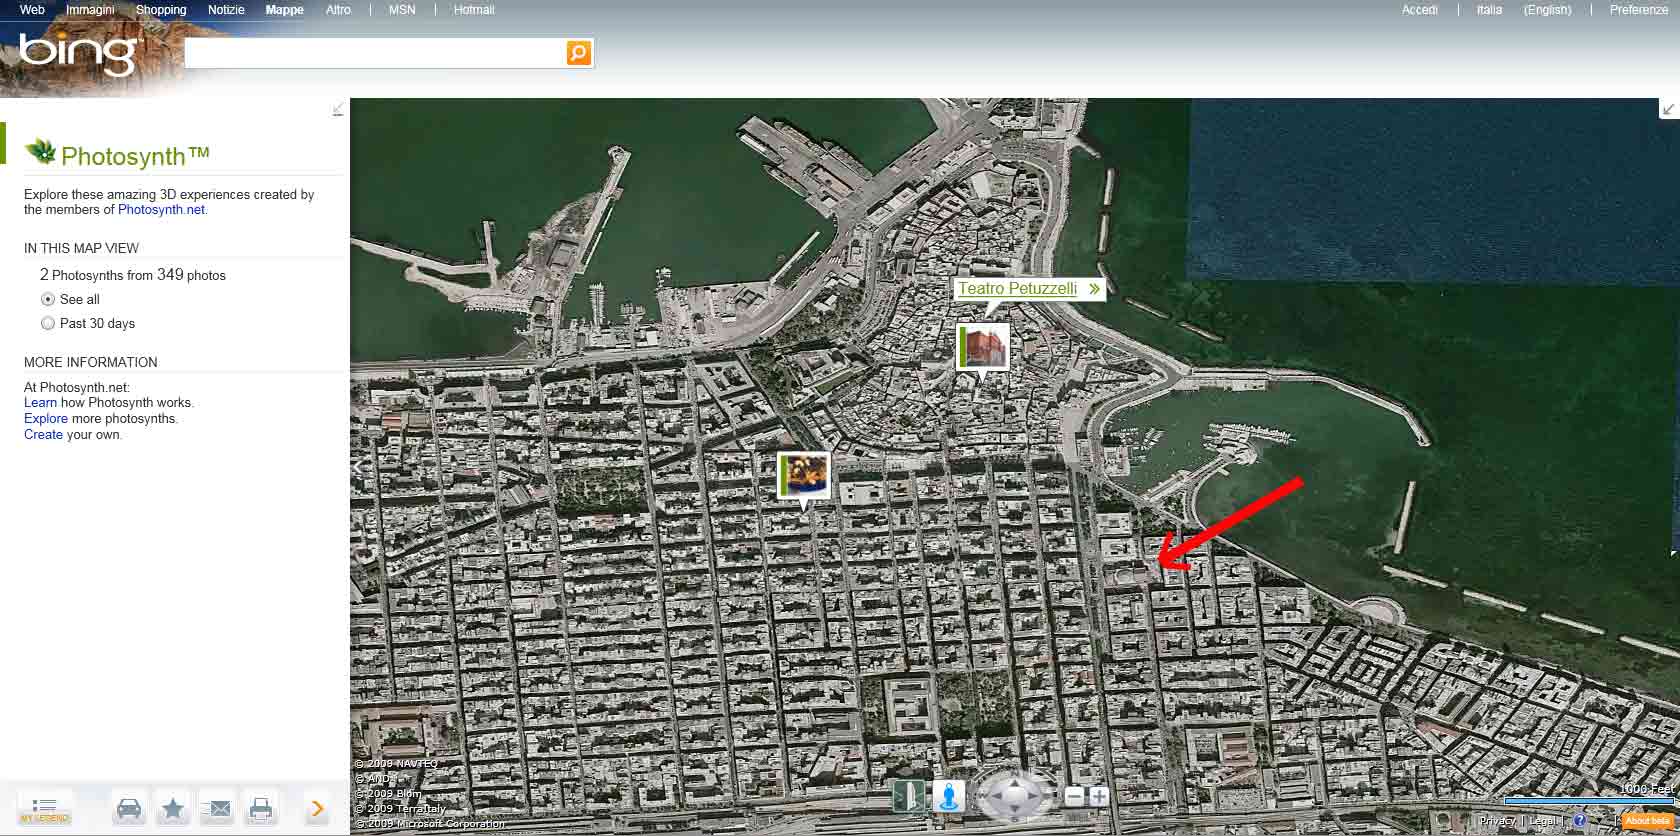 Bing Maps indica il teatro Petruzzelli di Bari nel posto sbagliato e lo chiama Petuzzelli (cliccare per ingrandire l'immagine)